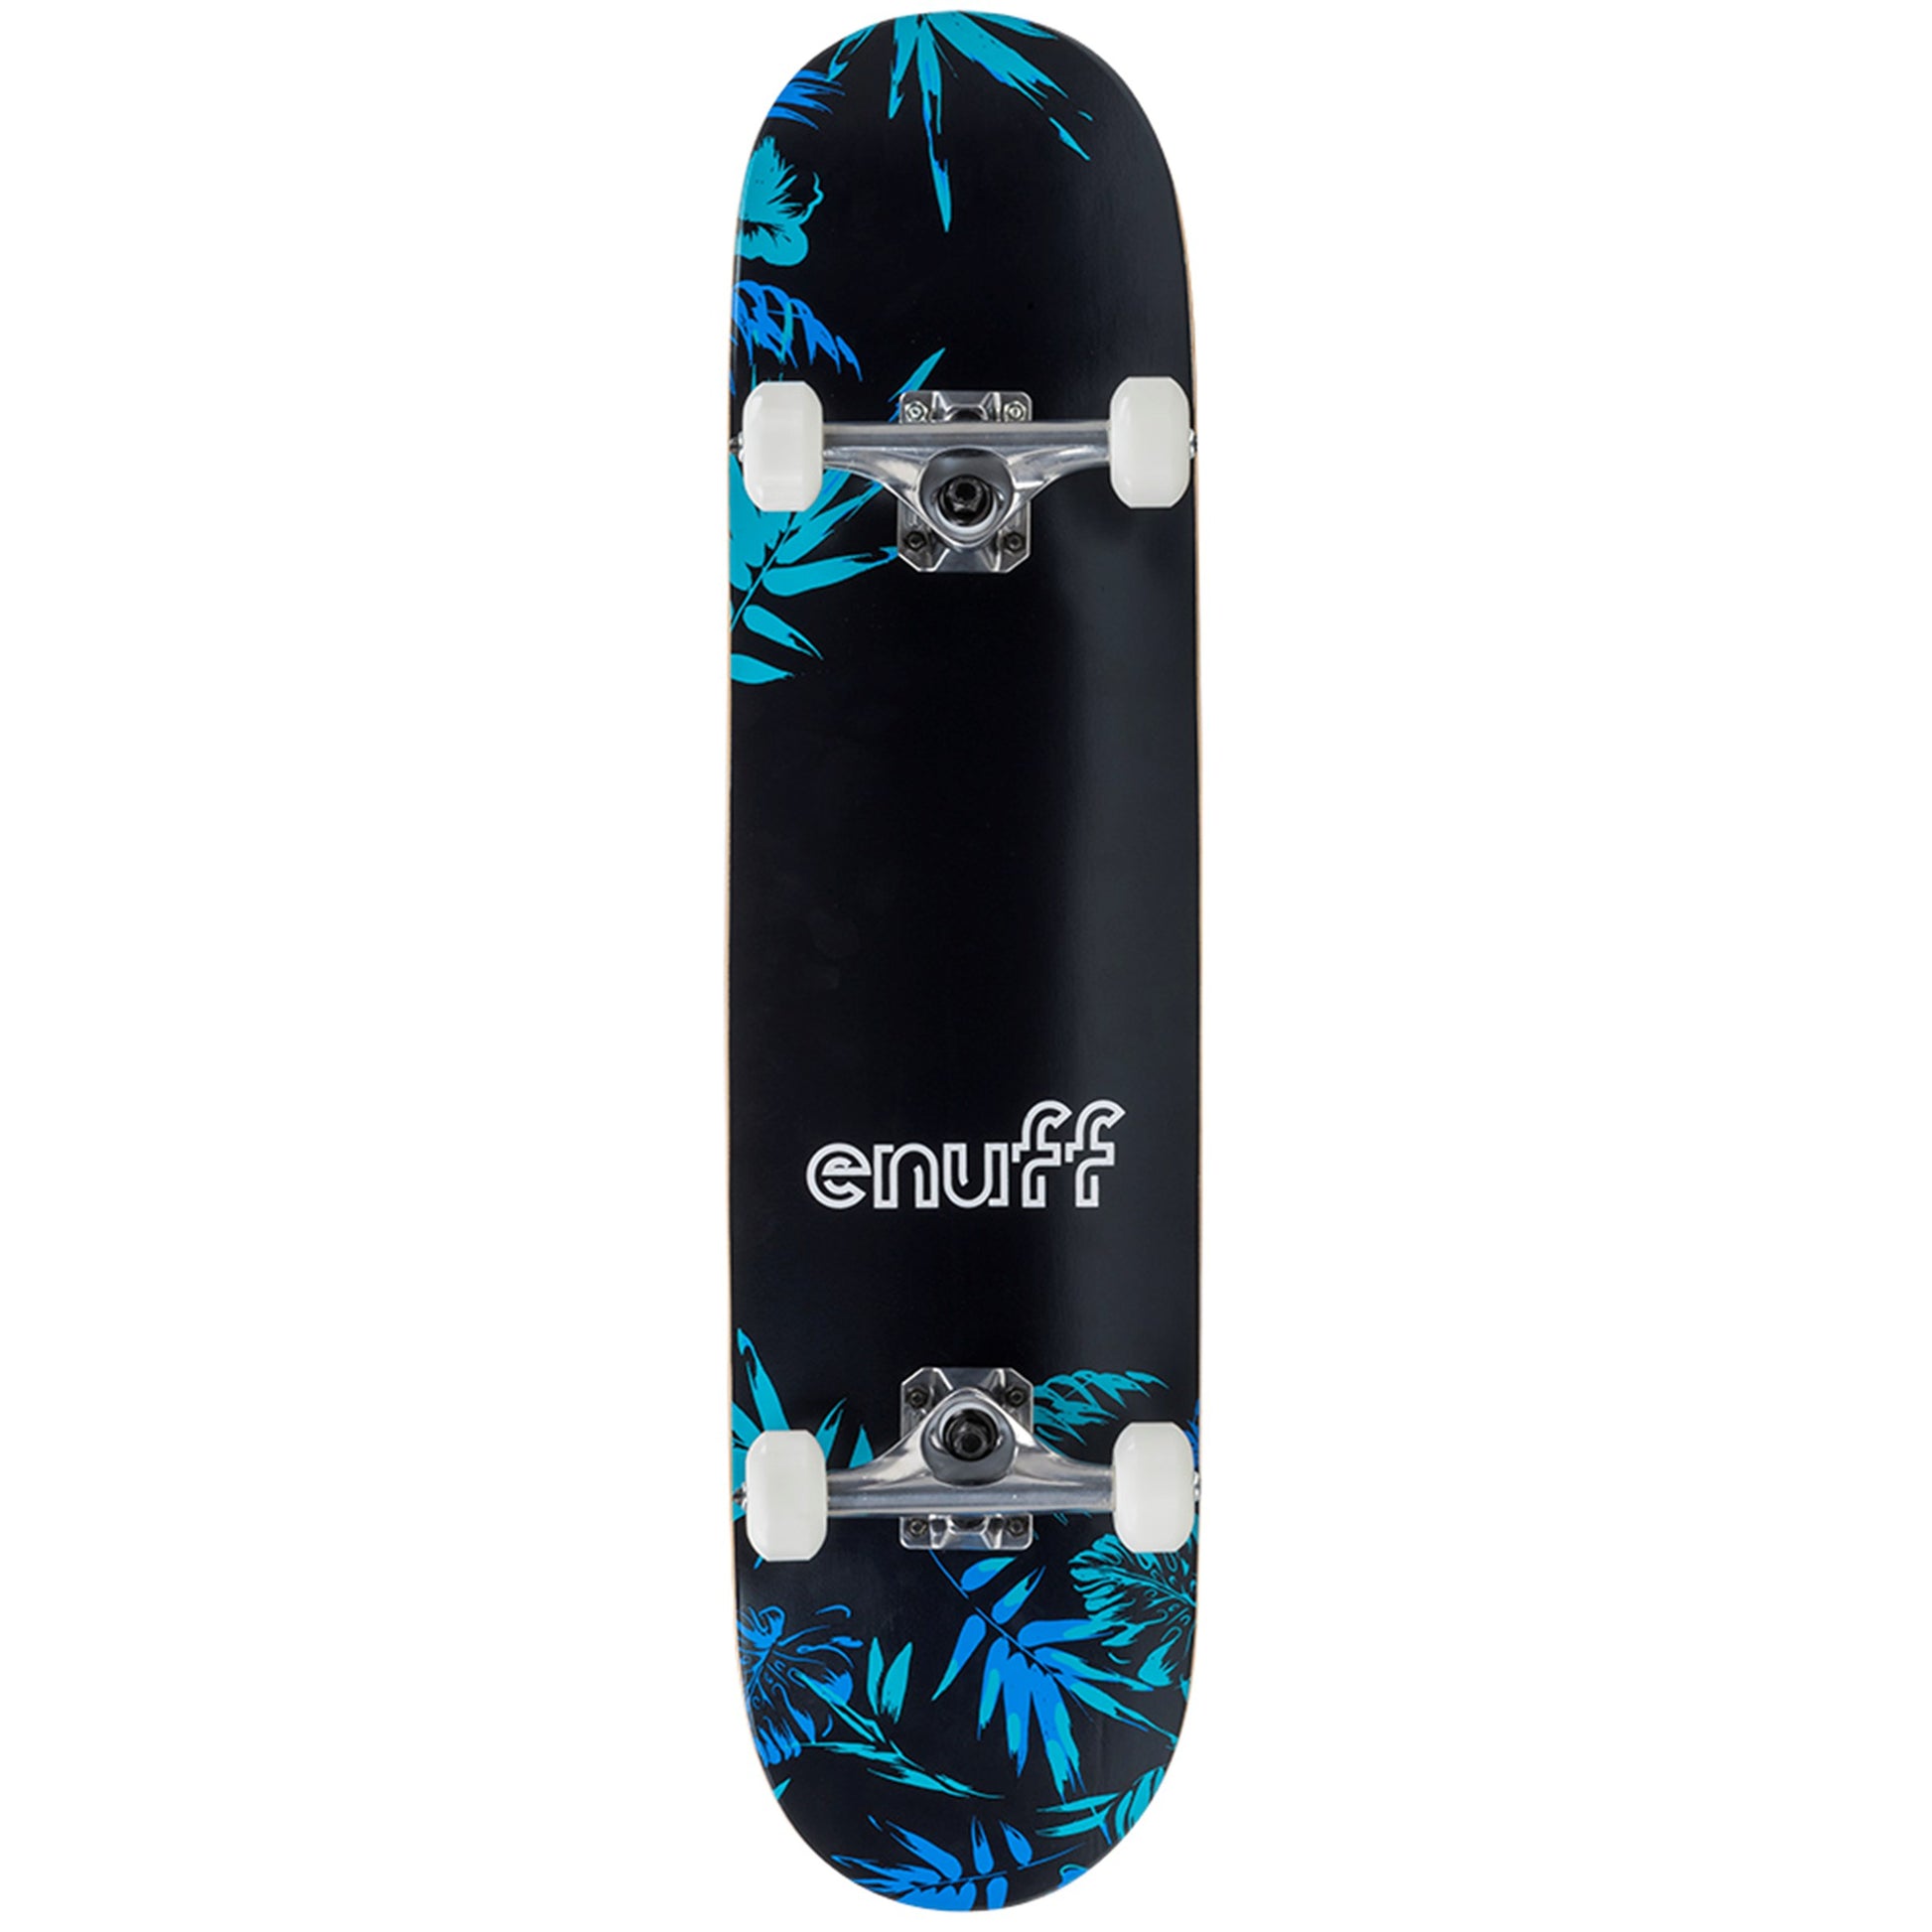 Enuff Floral Black / Blue Complete Skateboard - 7.75" x 31.5"